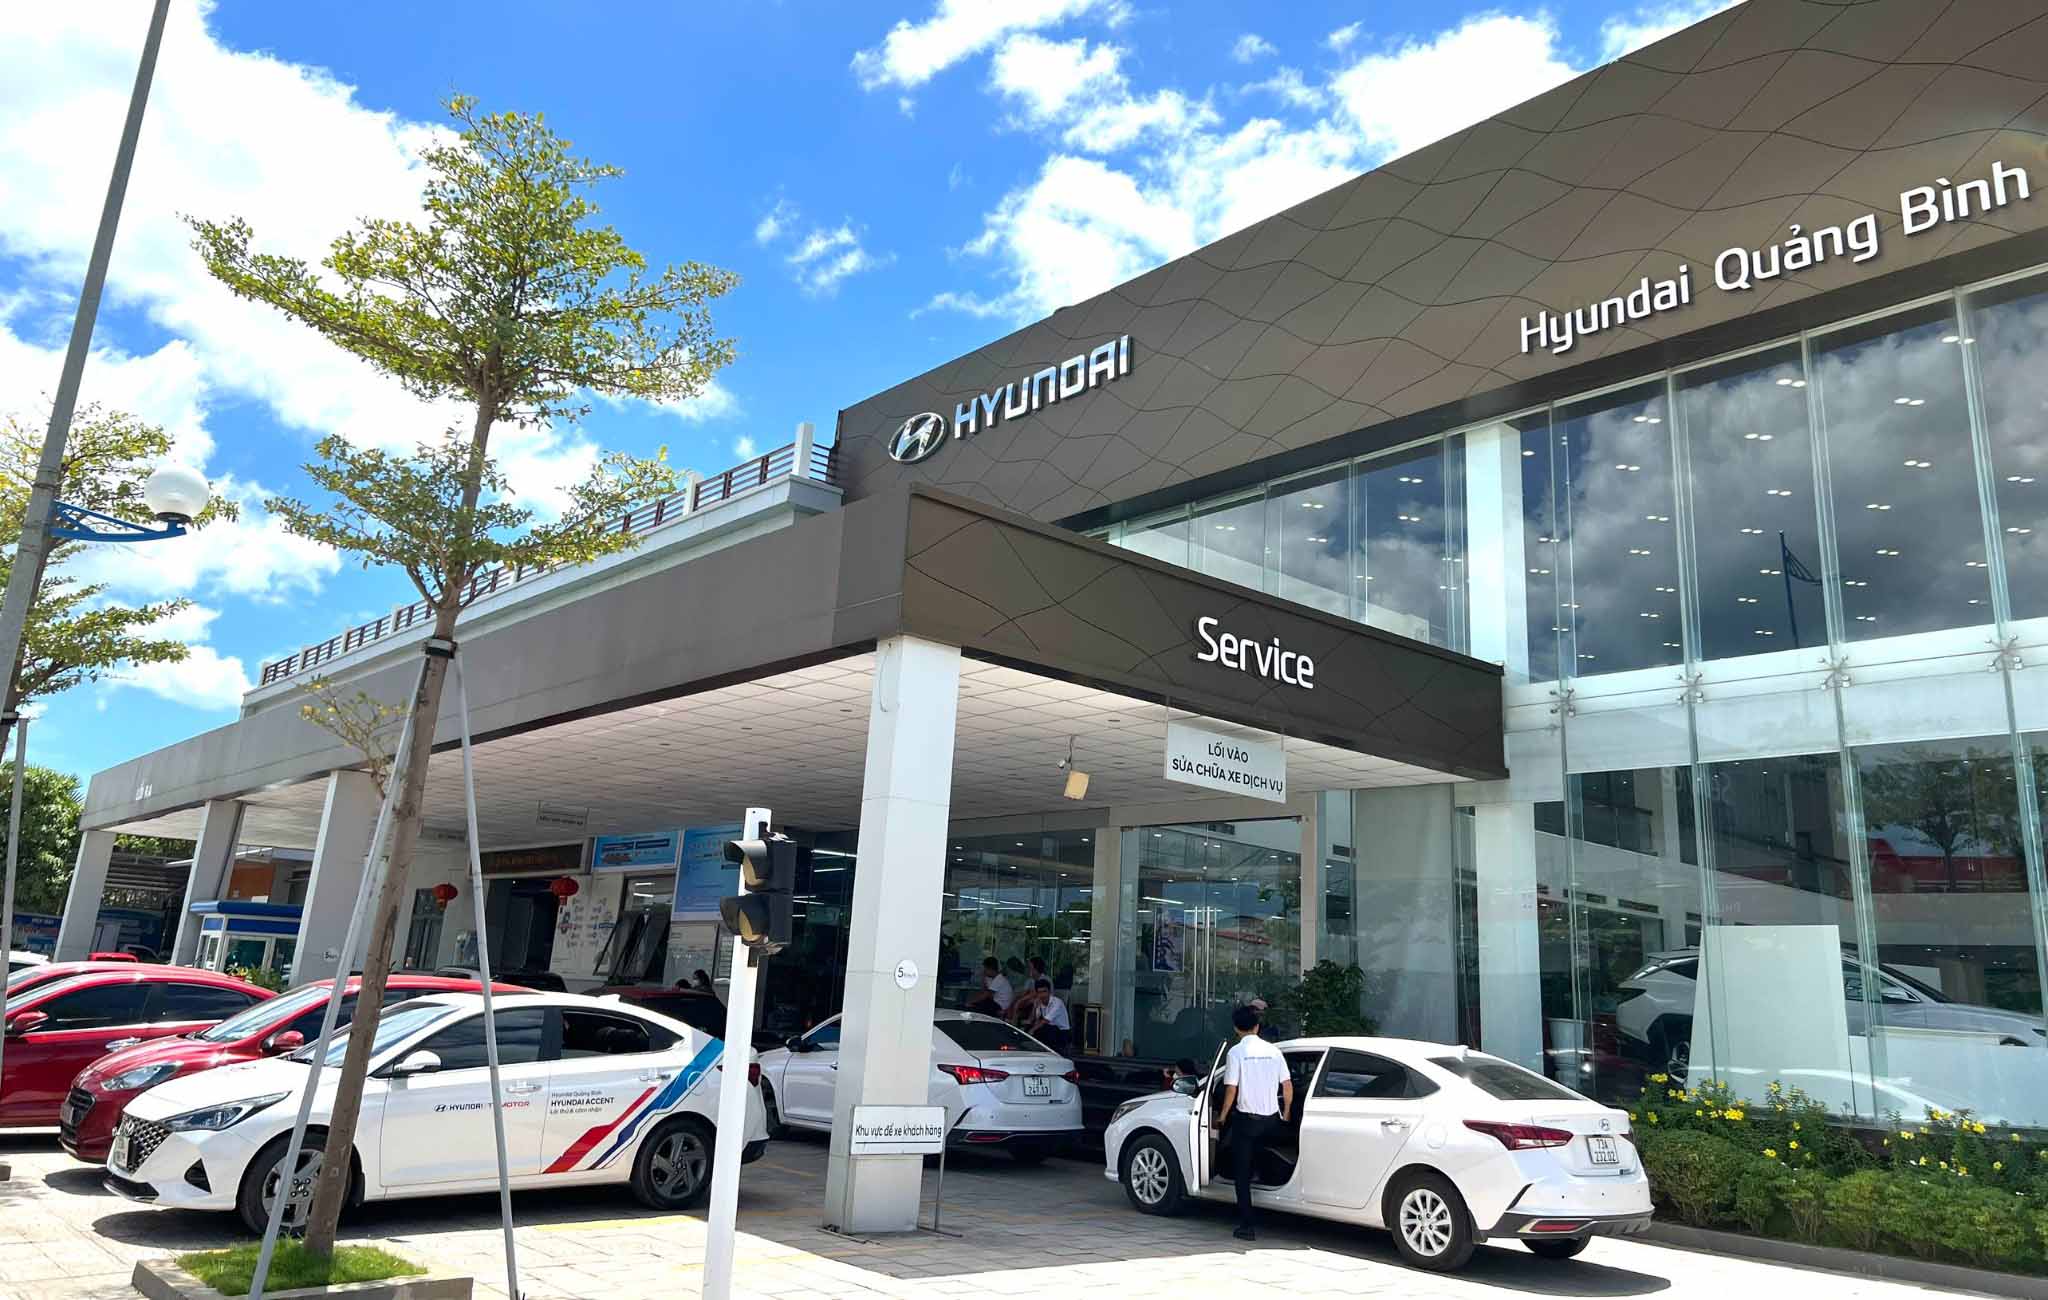 Hyundai-quang-binh-footer-card